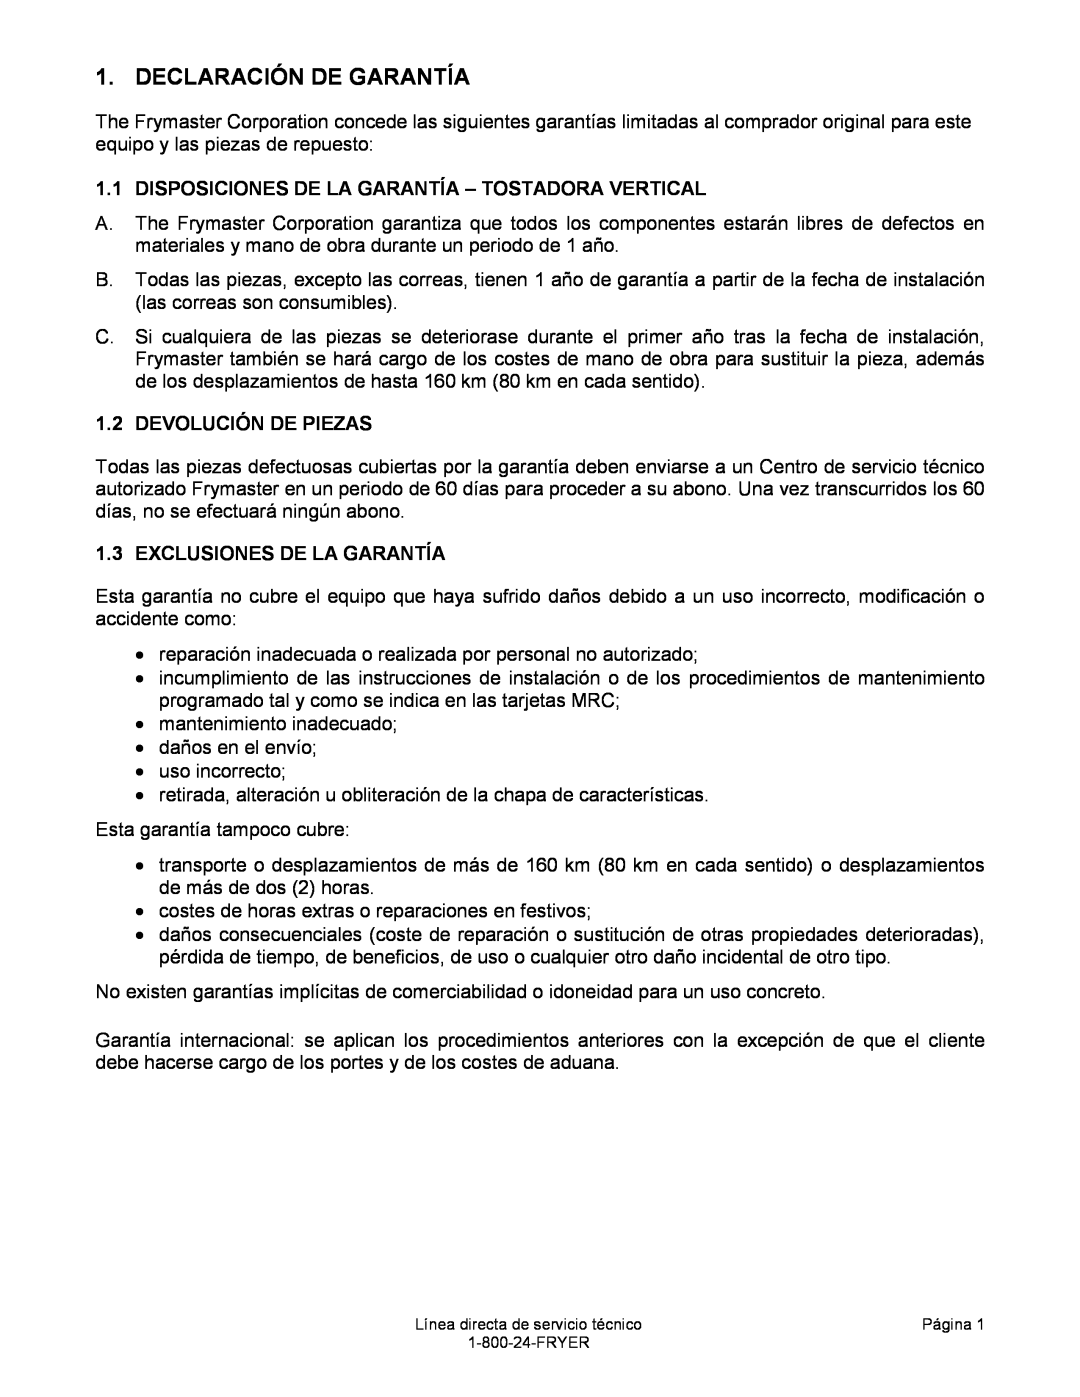 Frymaster VT Series manual Declaración De Garantía, Disposiciones De La Garantía - Tostadora Vertical, Devolución De Piezas 